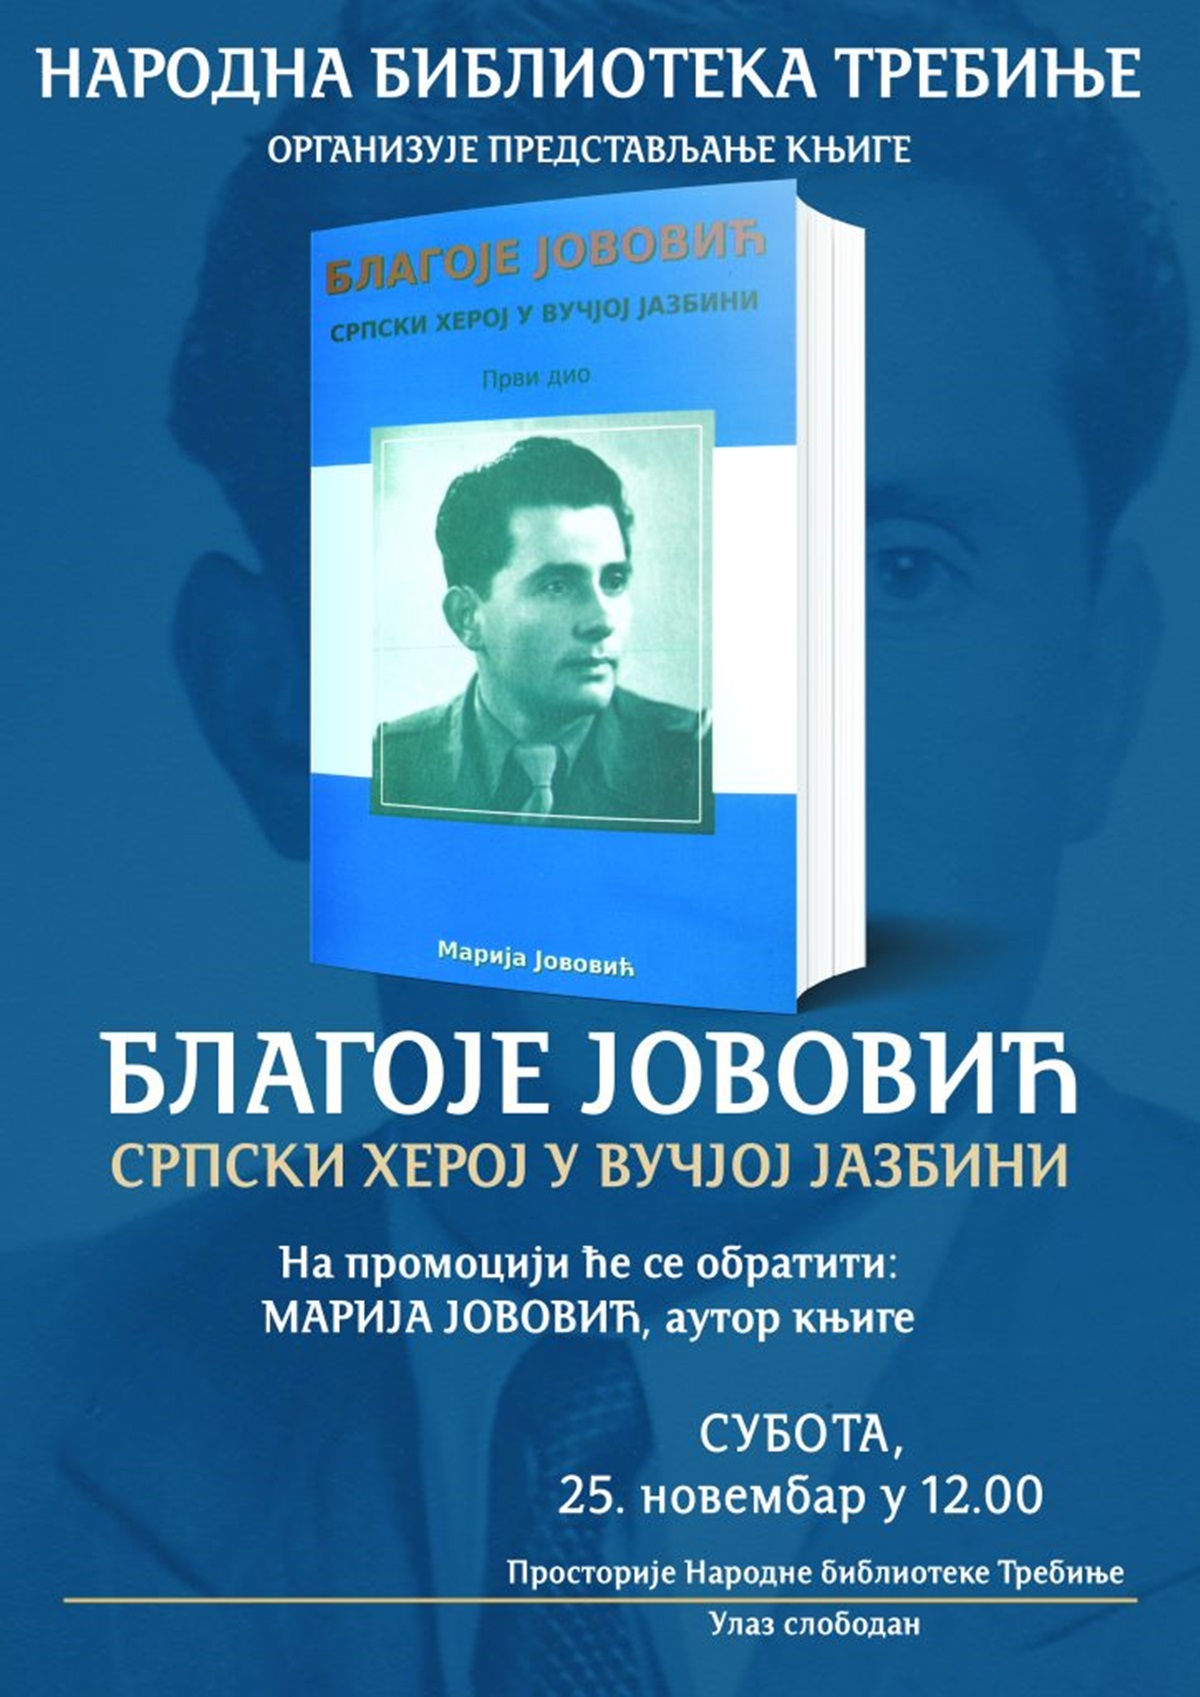 Народна библиотека: Промоција књиге „Благоје Јововић, српски херој у вучјој јазбини“